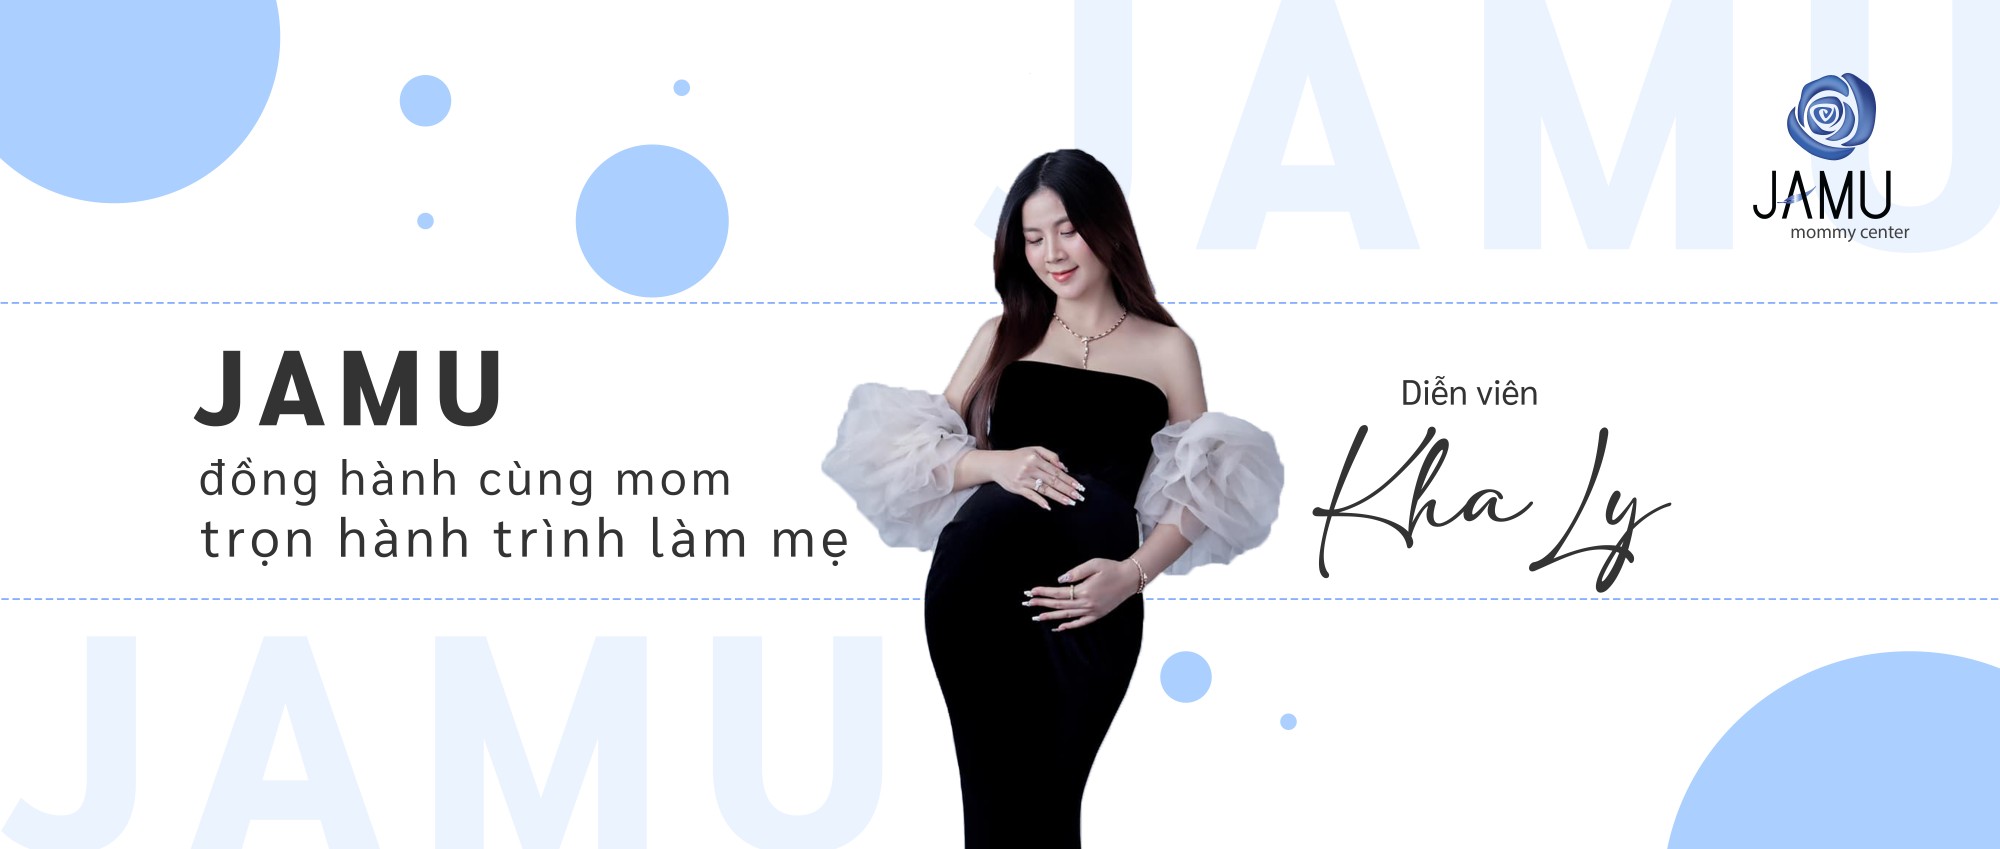 Chào mừng diễn viên Kha Ly trở thành khách hàng thứ 70.000 của Jamu Mommy Center